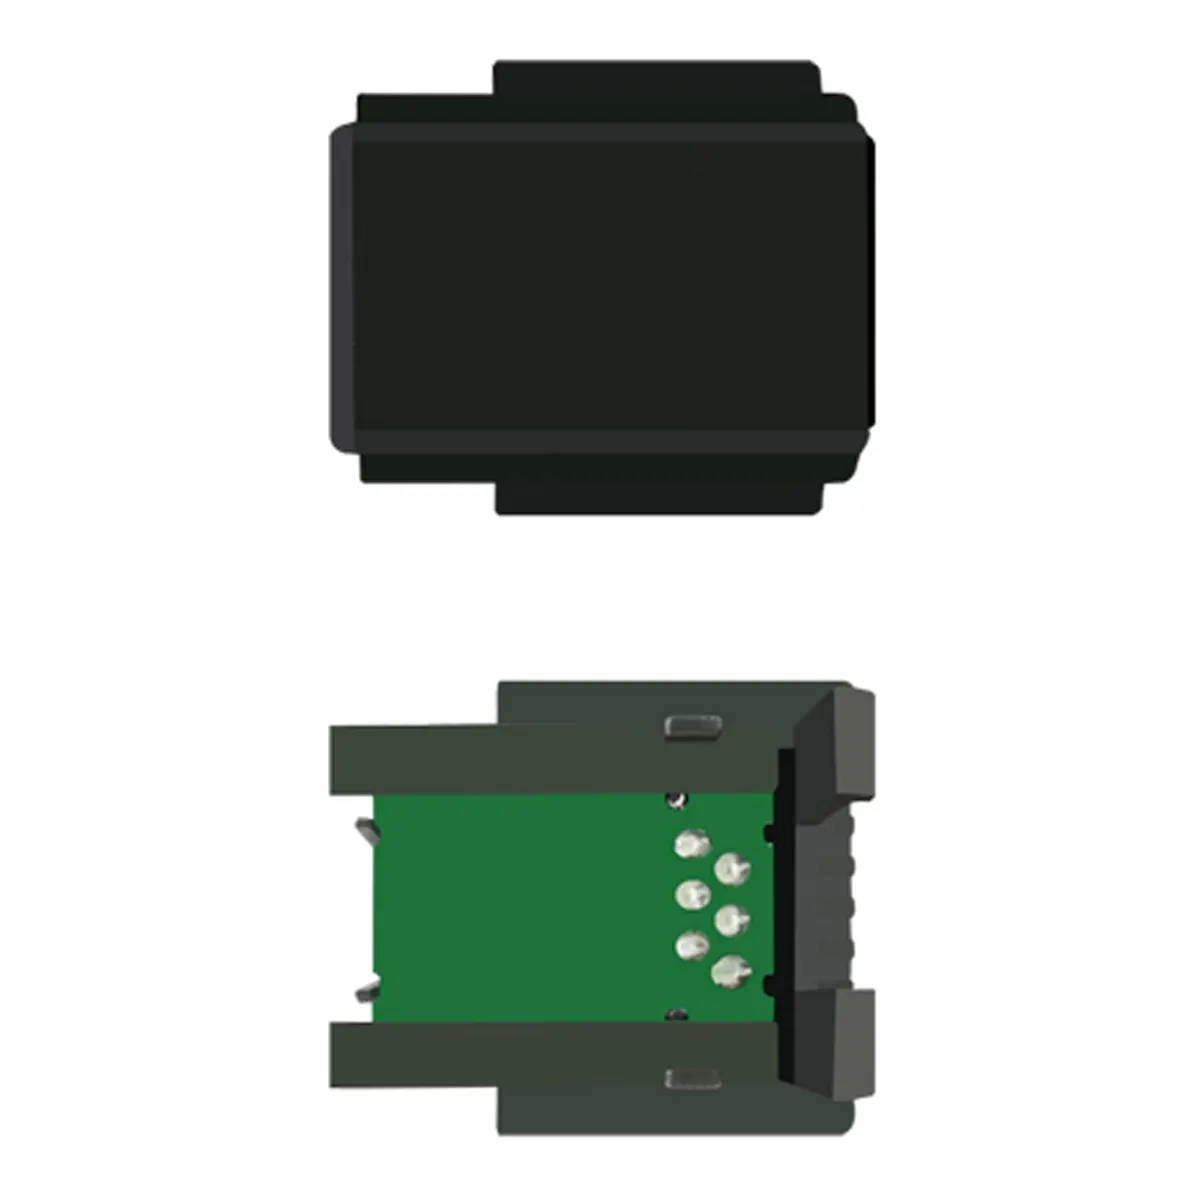 OKI DATA B 710 칩용 칩 레이저 토너 카트리지 블랙 토너 리셋 칩/OKI 블랙 정품